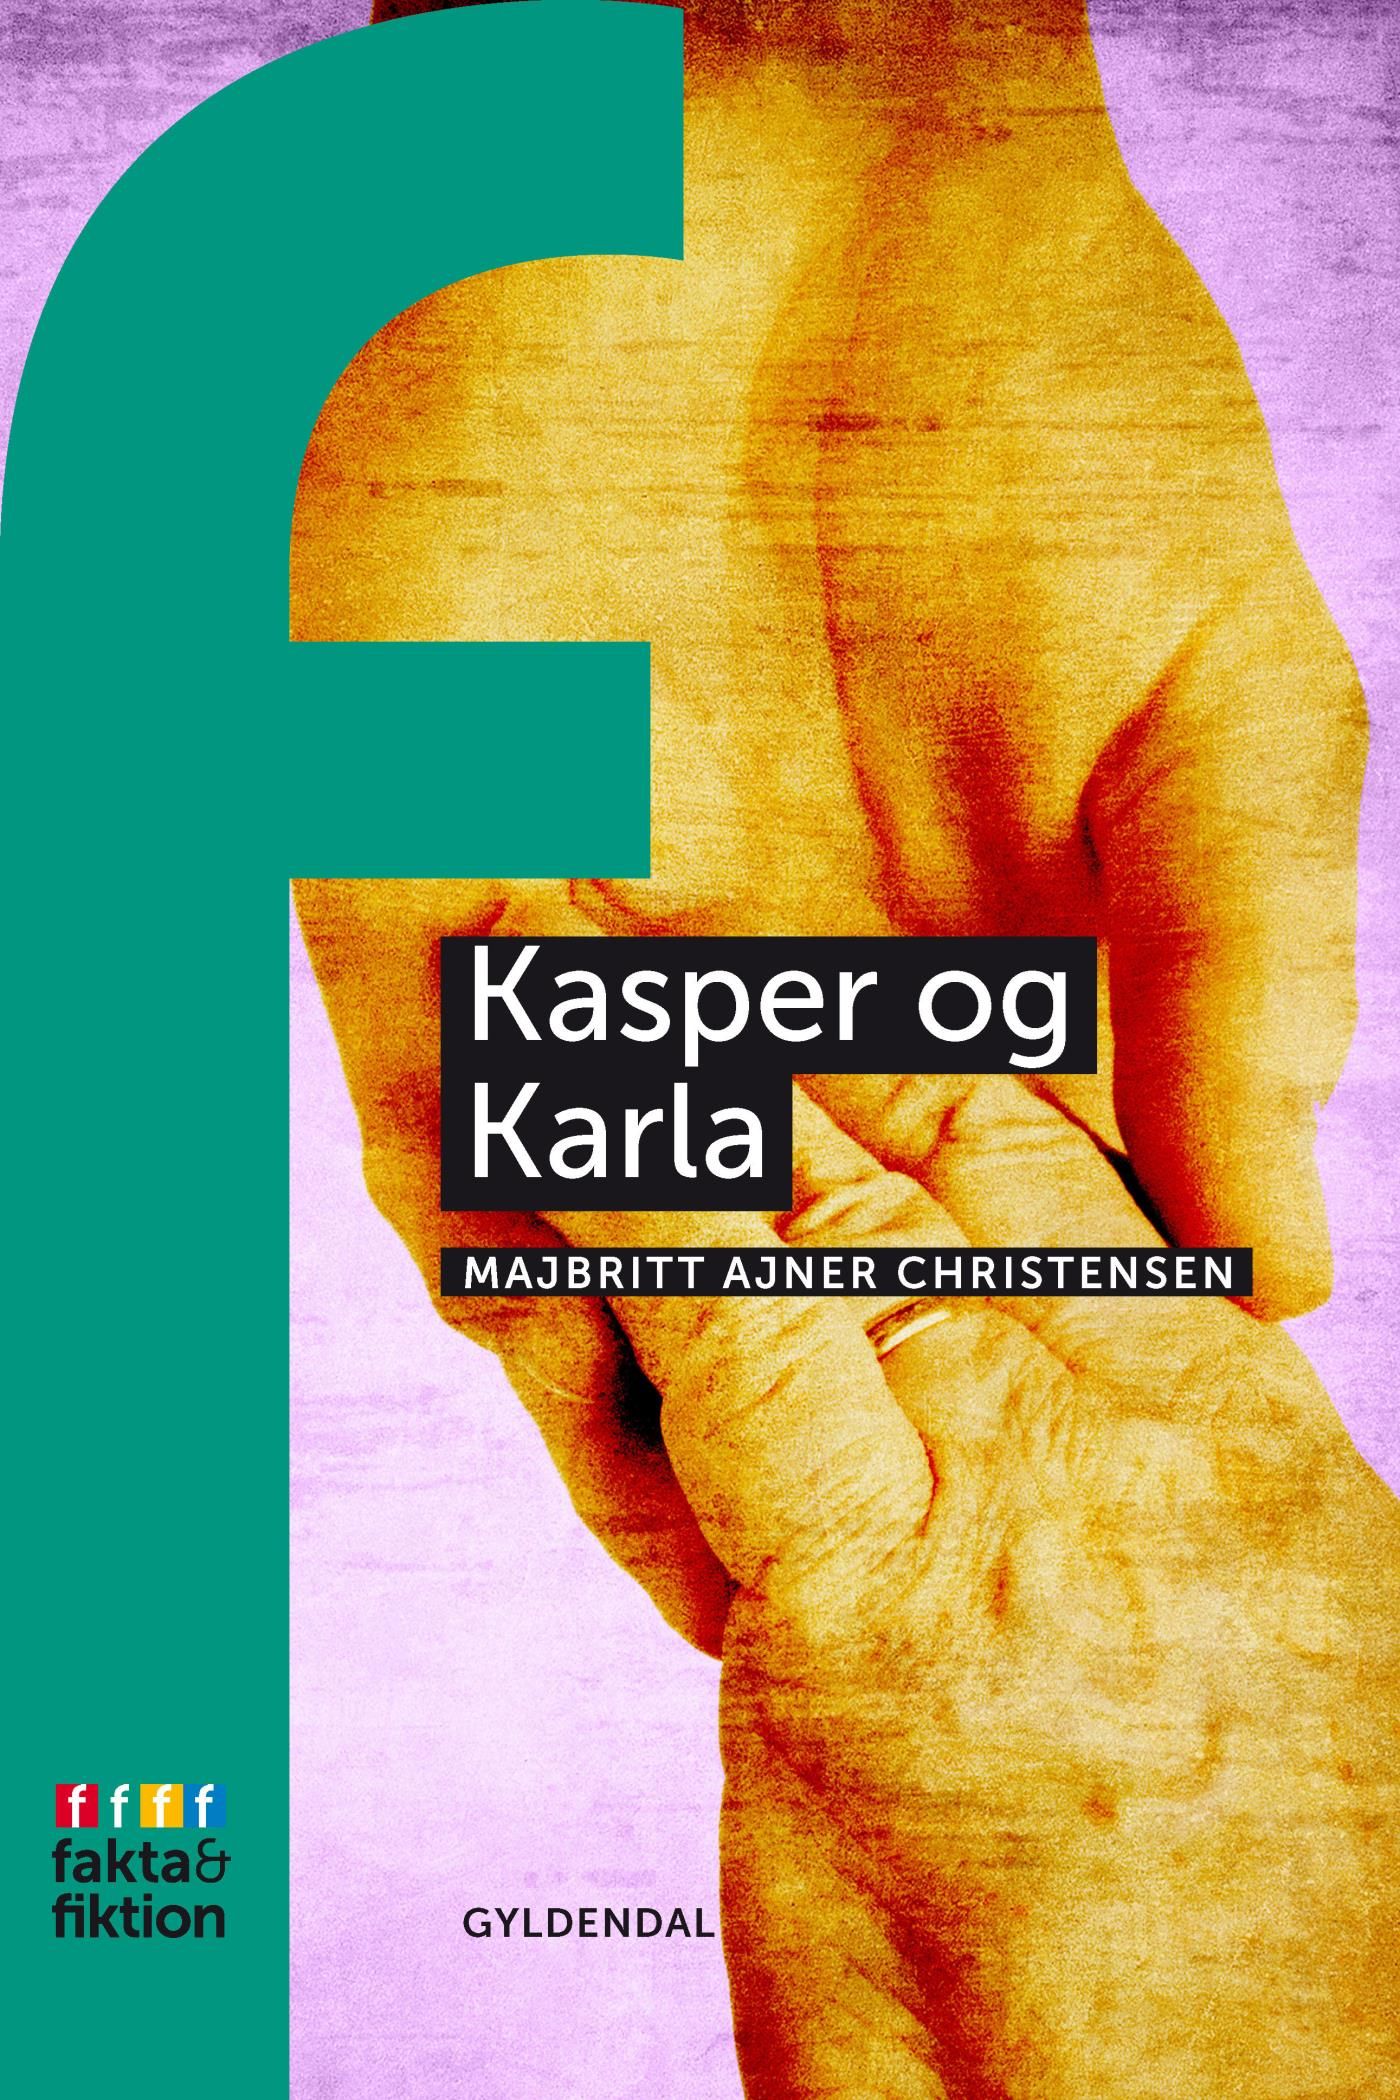 Kasper og Karla, eBook by MajBritt Ajner Christiansen